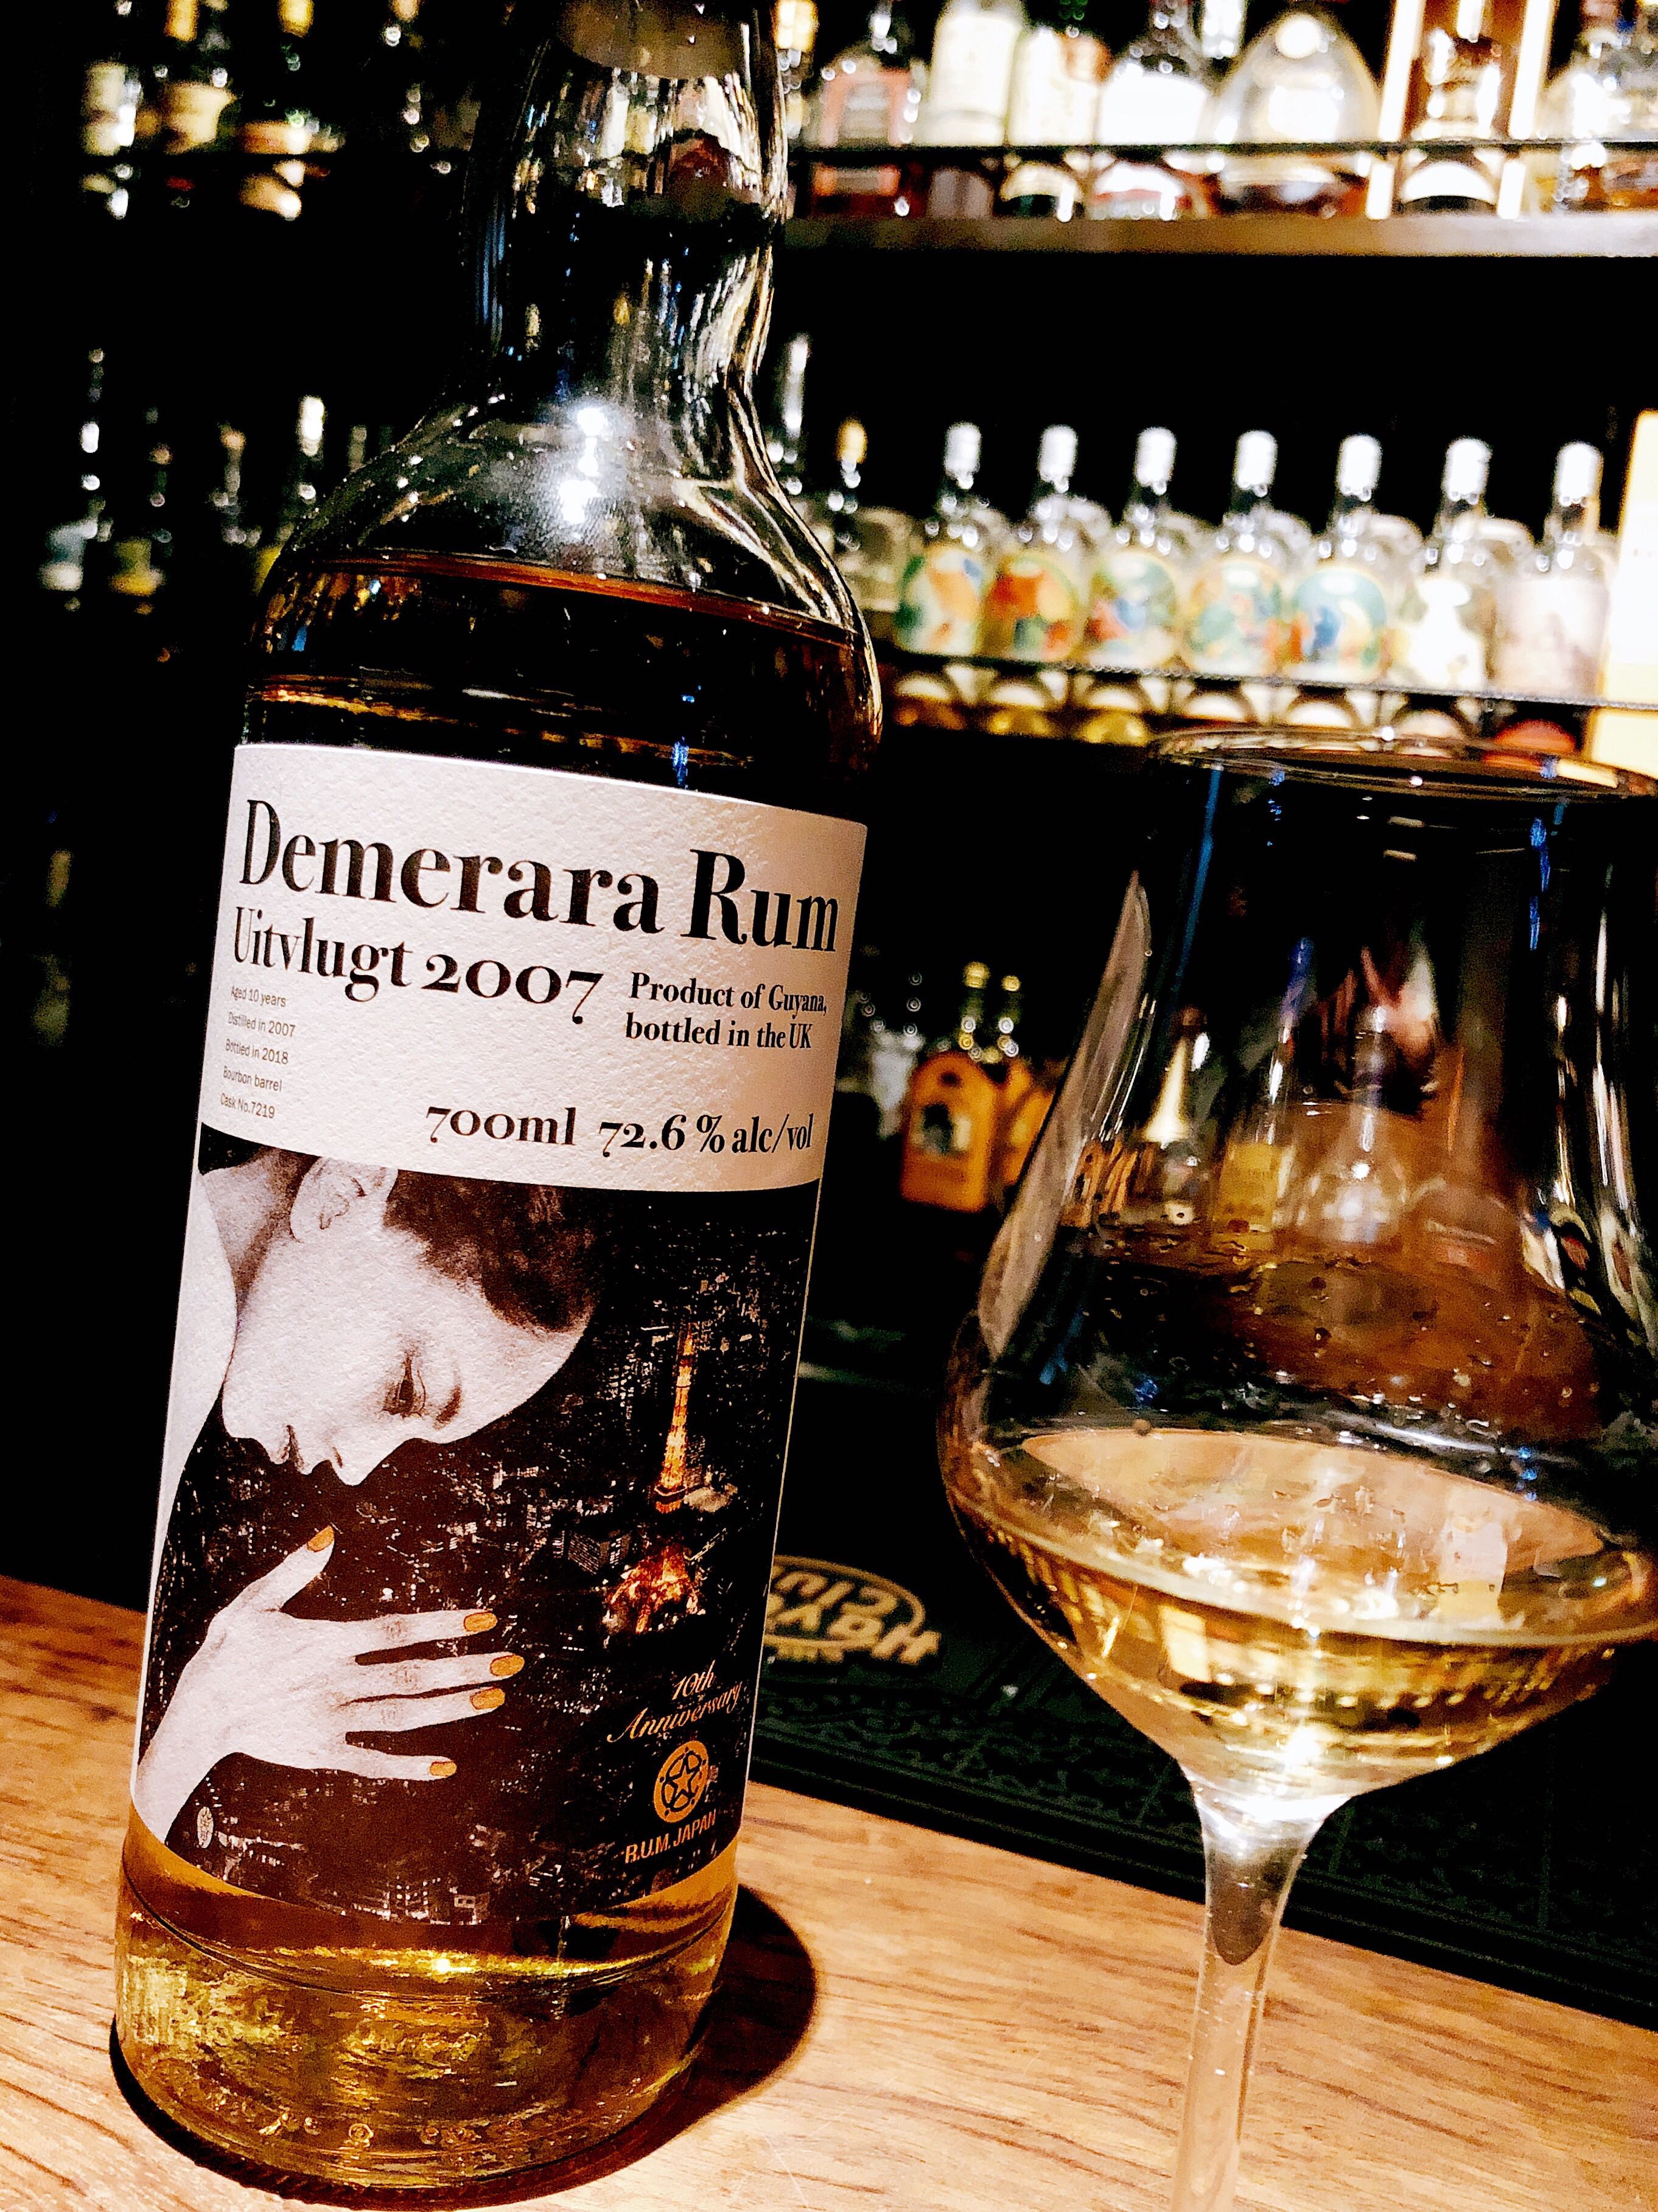 Demerara Rum Uitvlugt 2007 Rum Japan 10Th ANNIVERSARY - サウスアメリカ